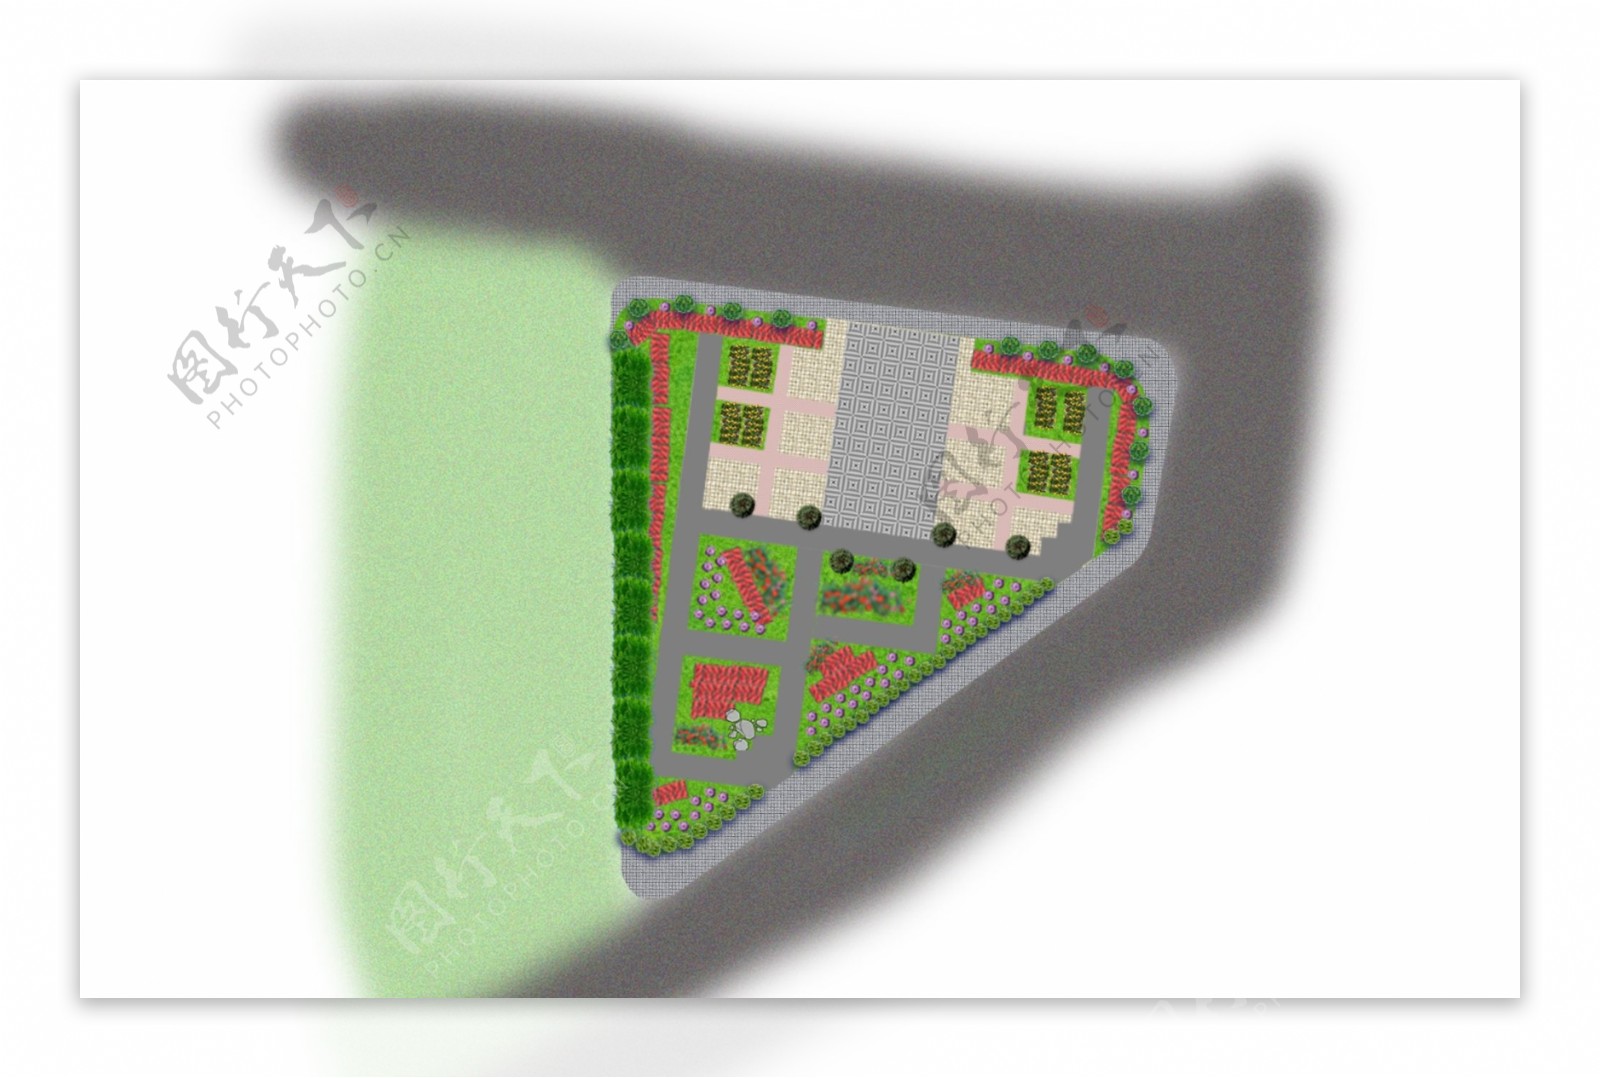 路口公园绿化小广场平面效果图